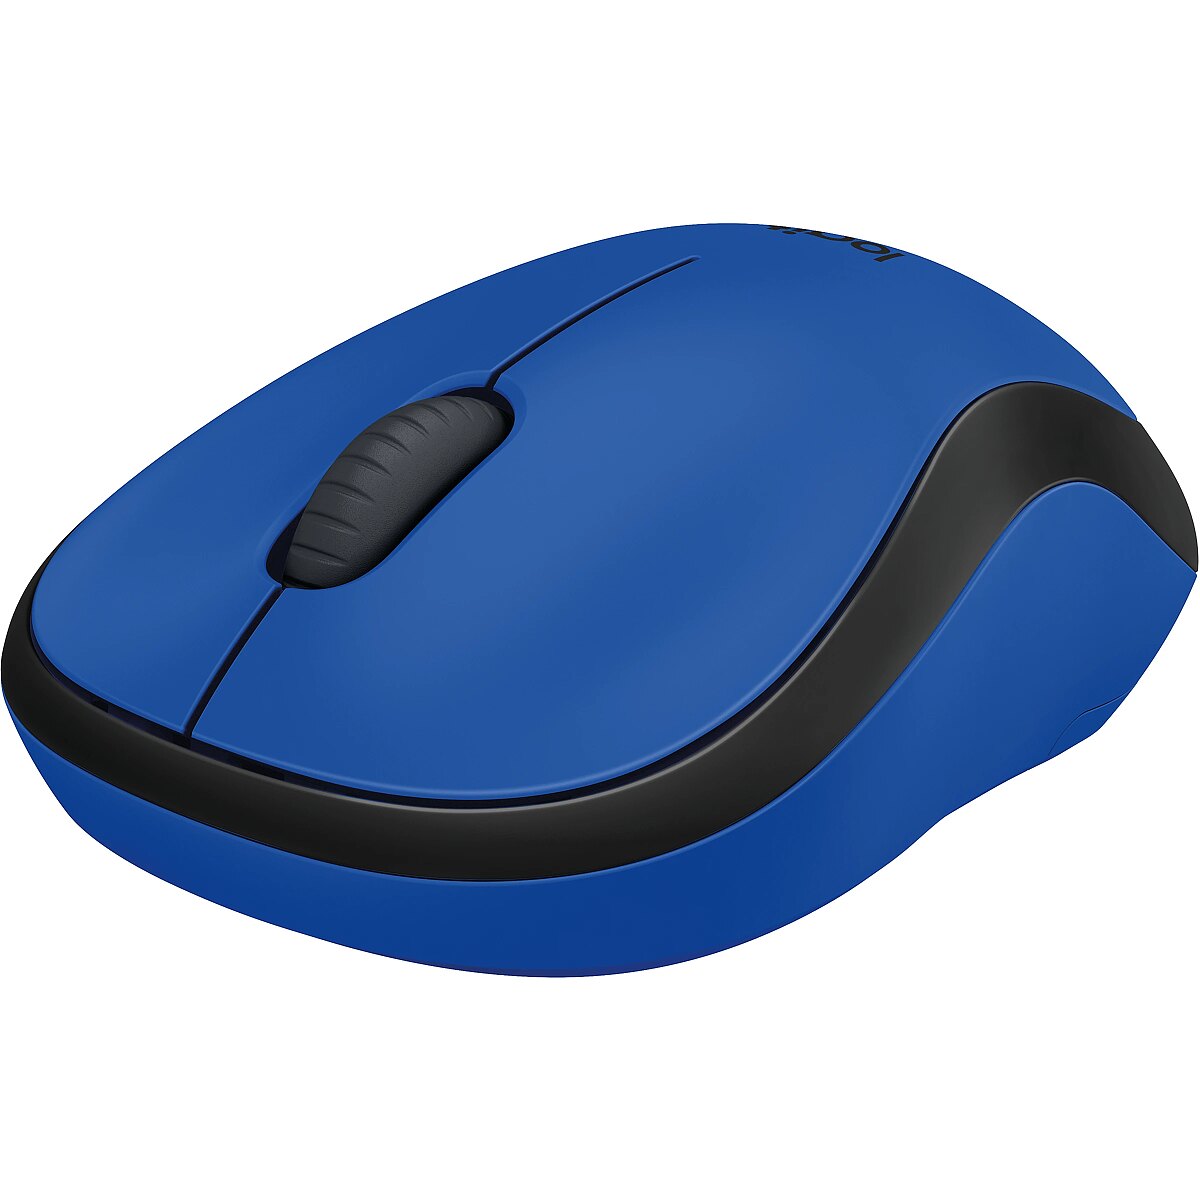 Беспроводная мышь синяя. Logitech m220 Silent. Logitech m220 Silent Blue. Logitech m220 Silent Mouse. Мышь Logitech m220 Silent Blue USB.